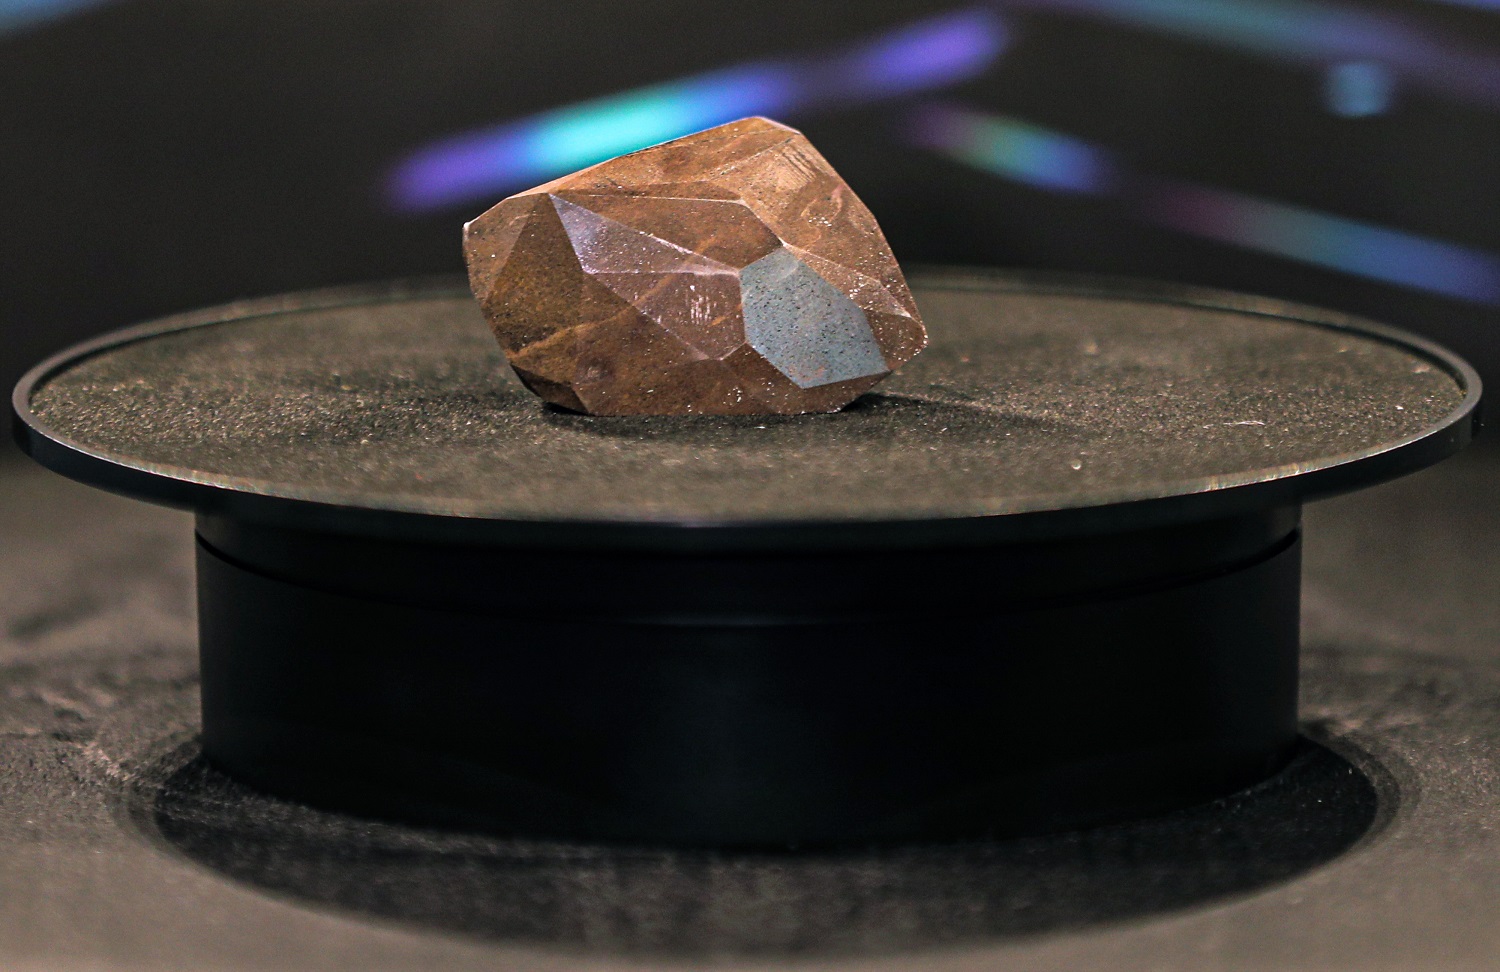 Pirmą kartą viešai eksponuojamas didžiausias pasaulyje šlifuotas deimantas